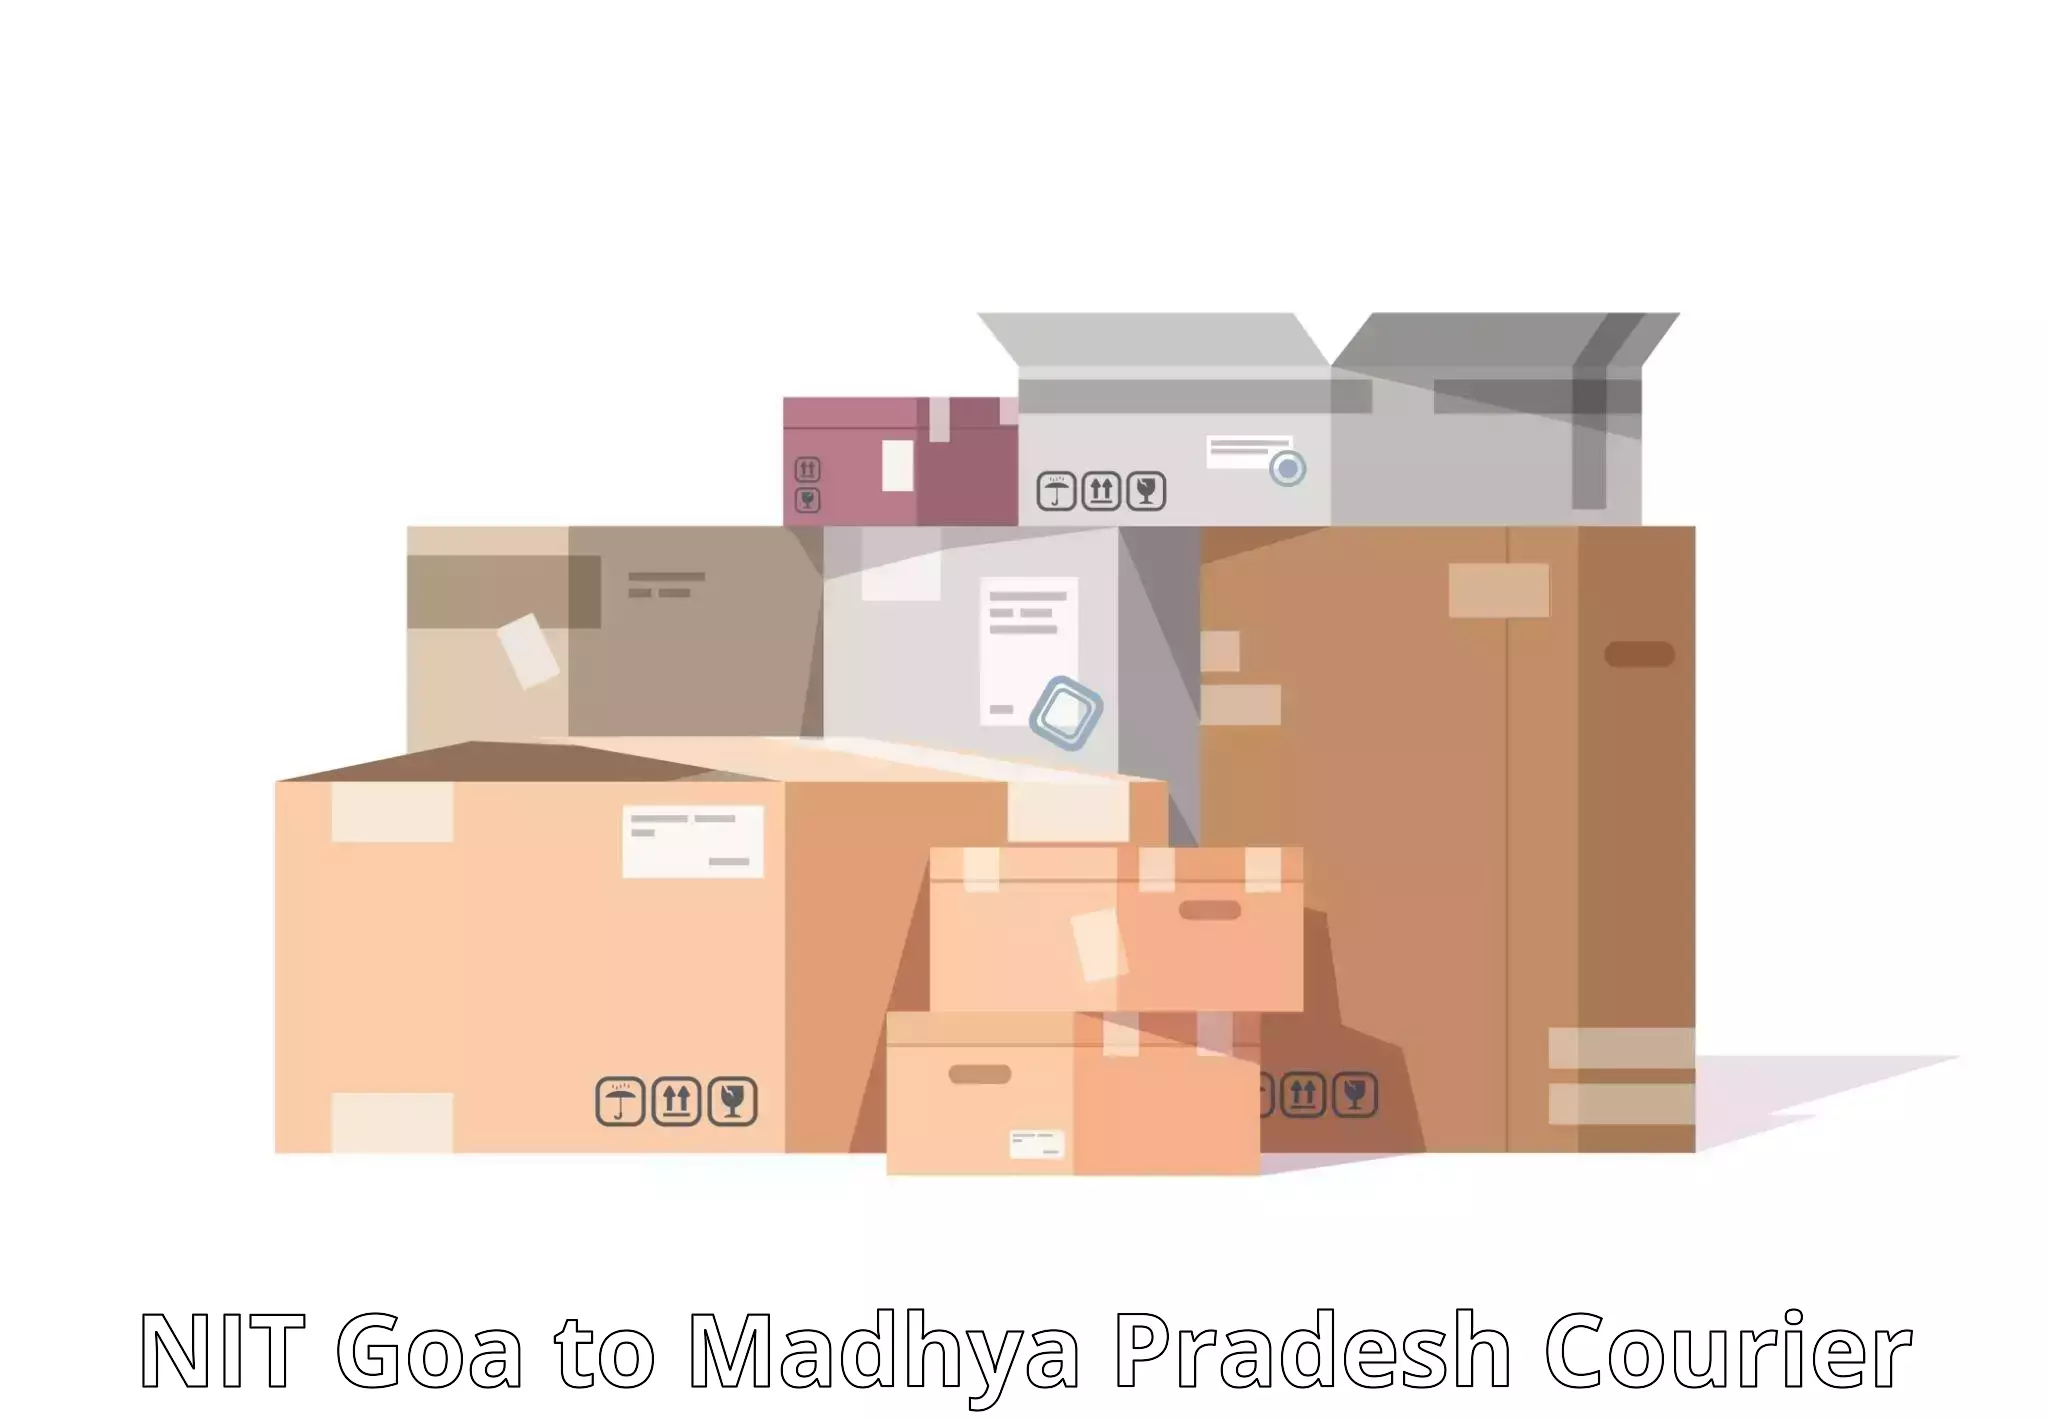 24/7 courier service NIT Goa to Sohagi